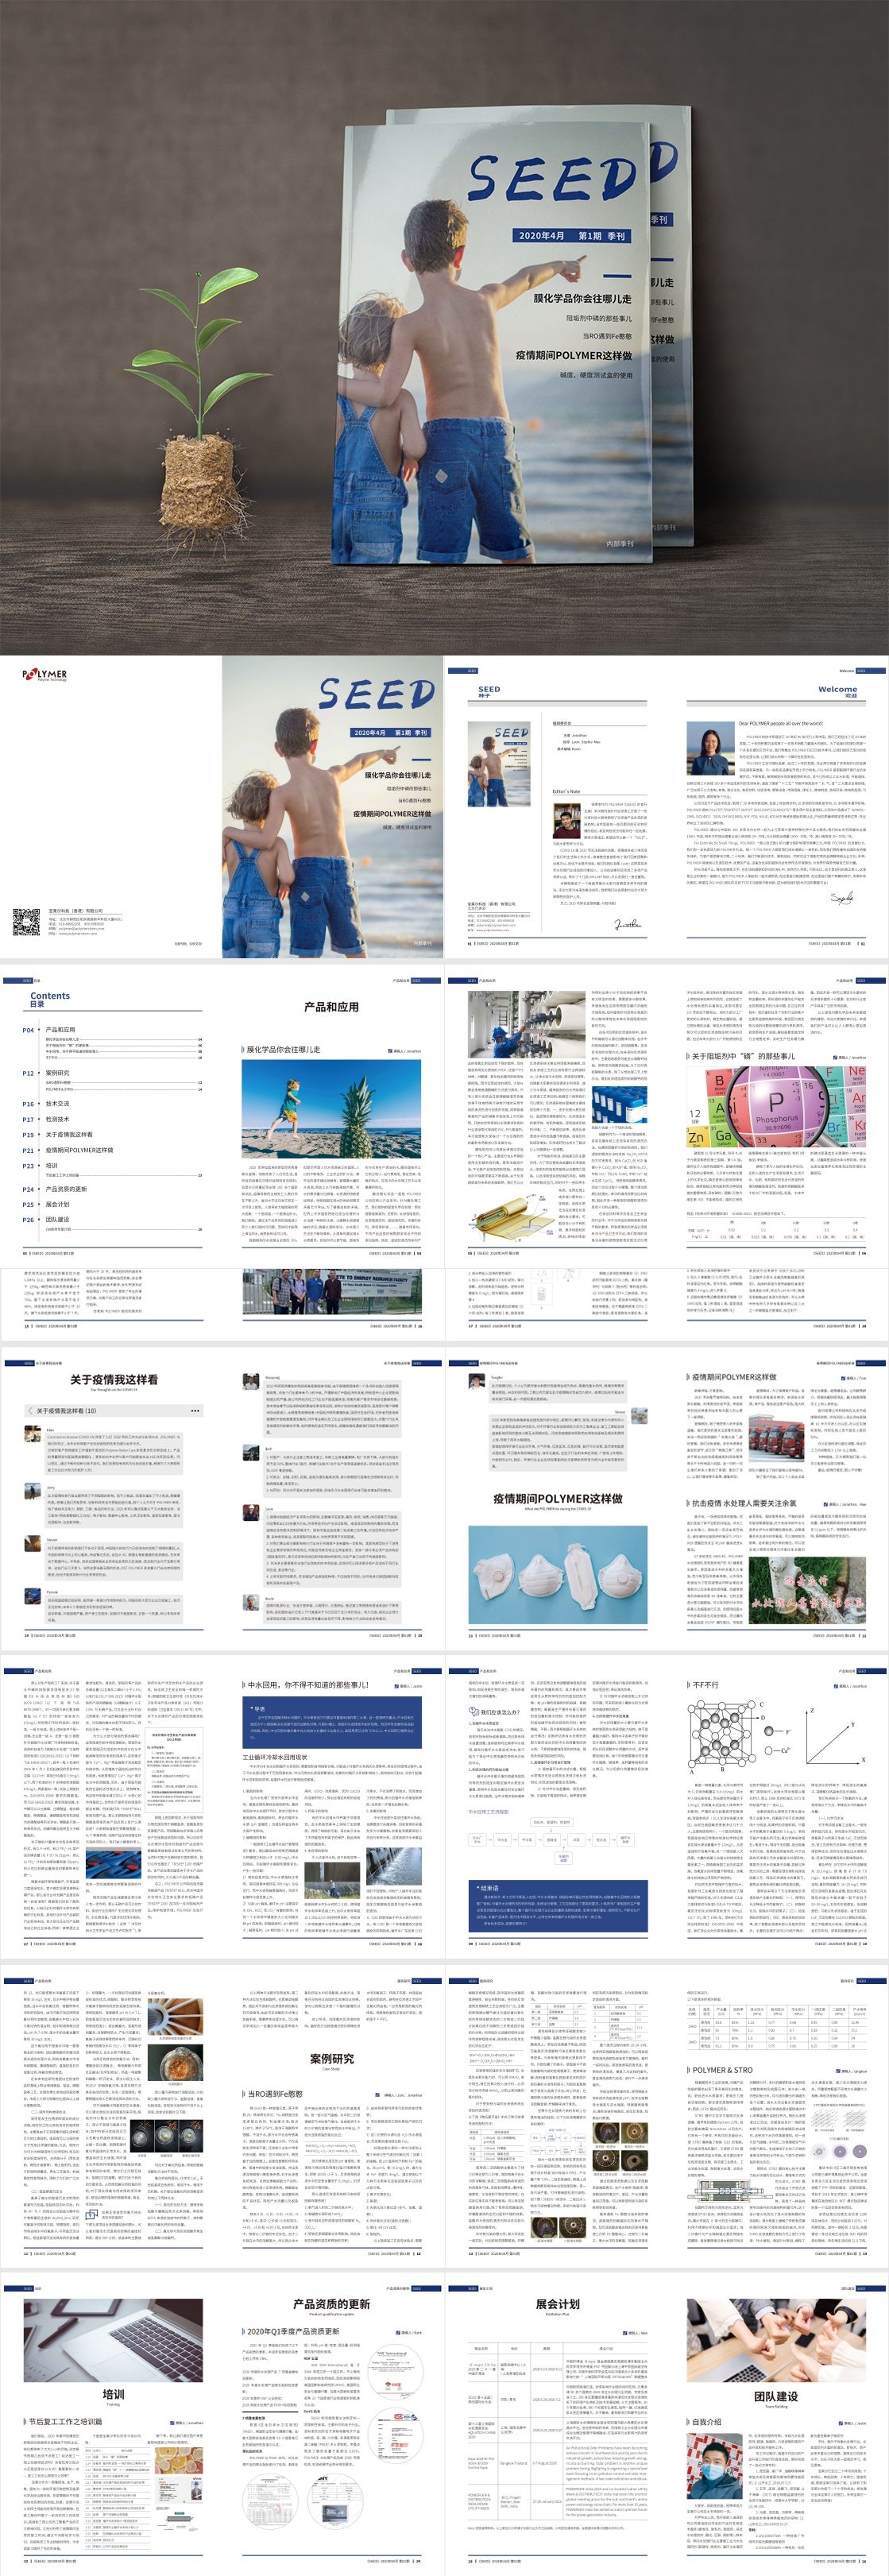 内部期刊 季刊设计 飞特网 会员原创画册设计